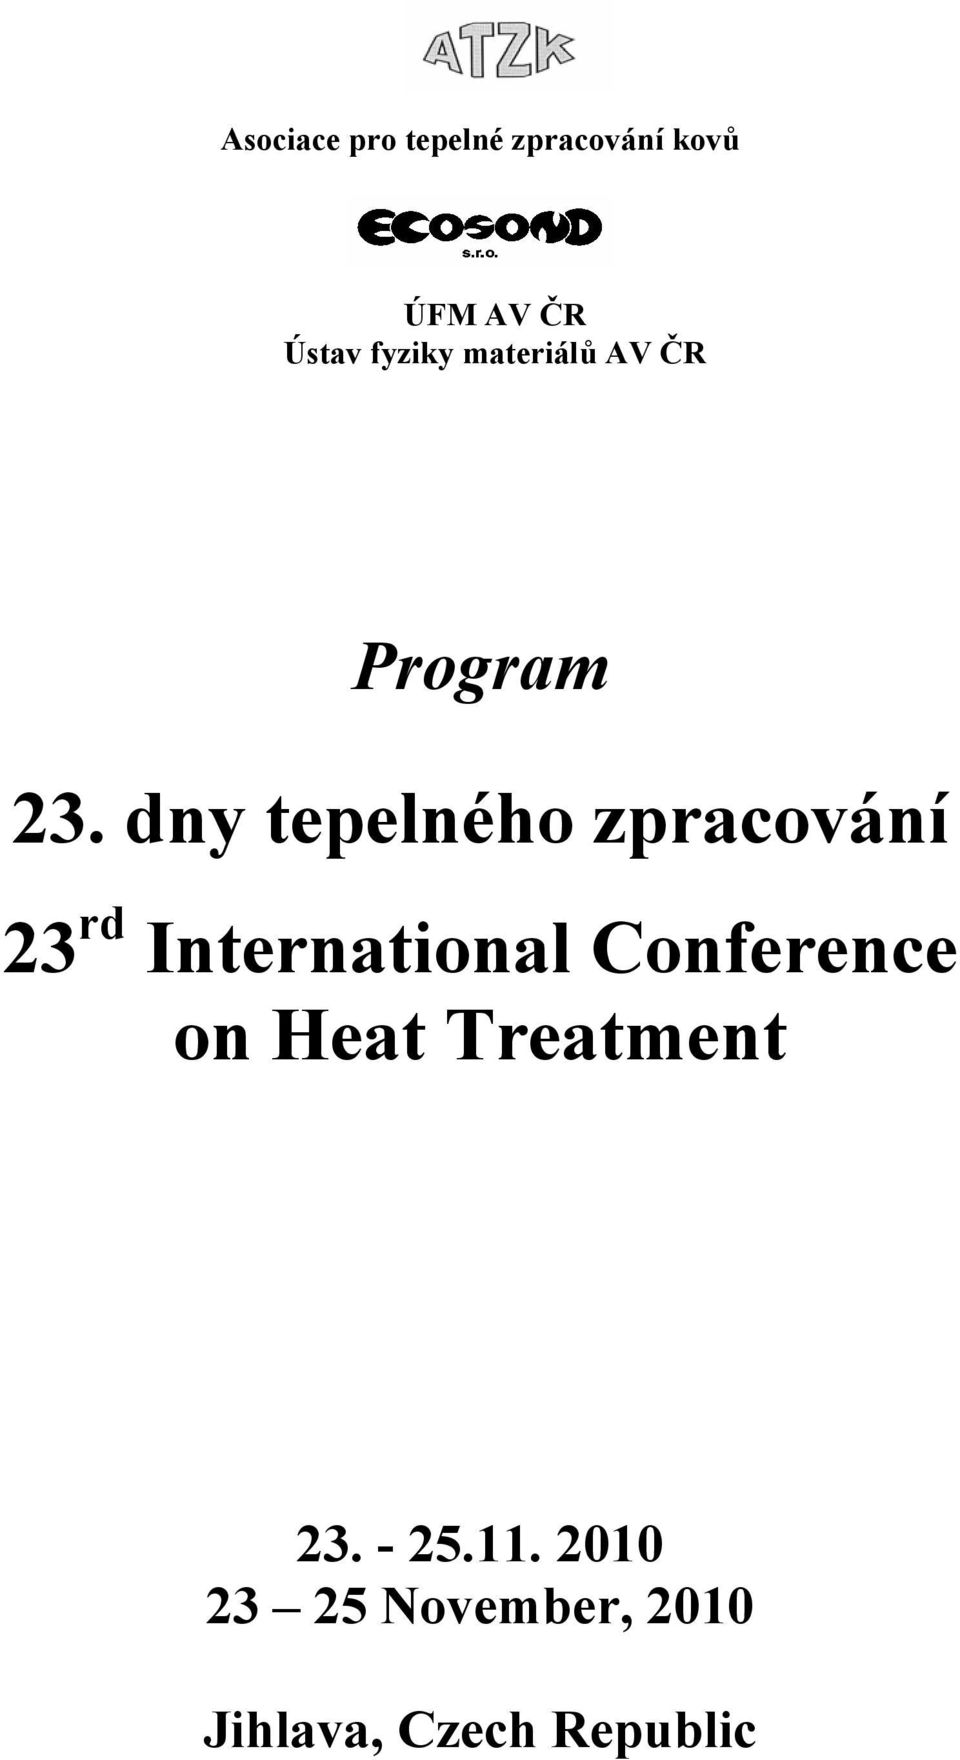 dny tepelného zpracování 23 rd International Conference